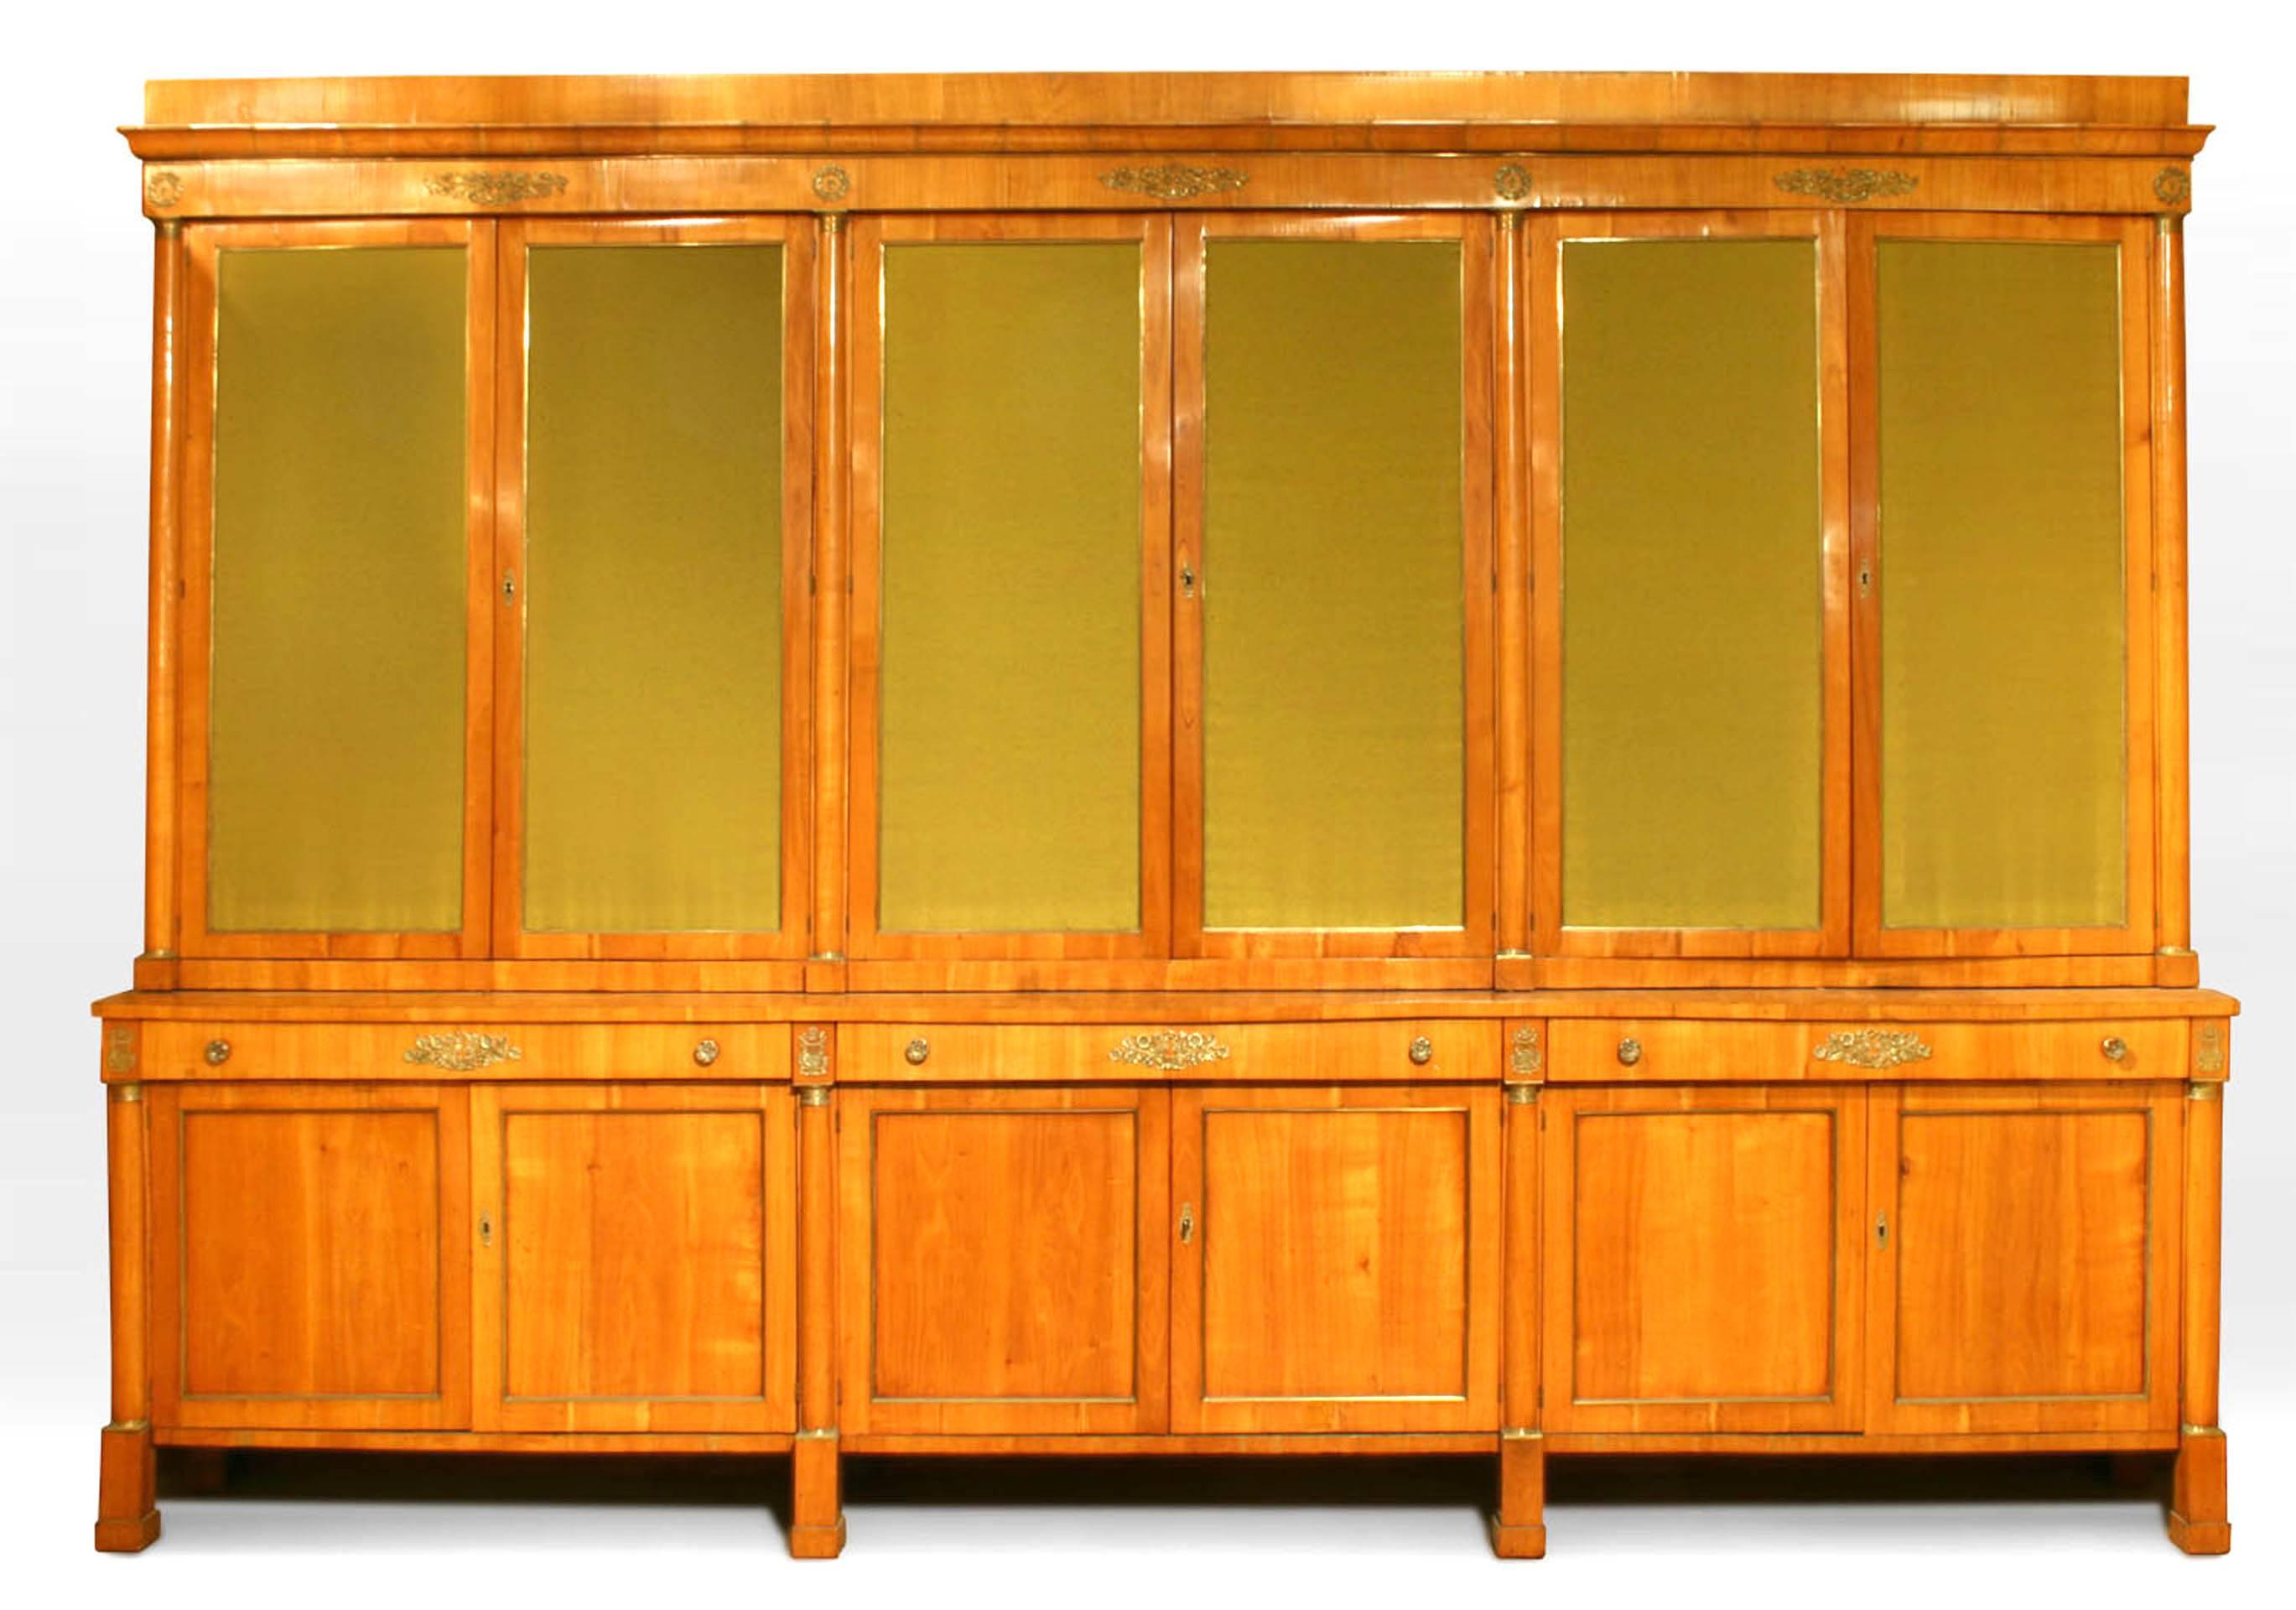 Grand meuble Biedermeier autrichien (19e siècle) à 12 portes, en merisier et laiton, avec côtés à colonnes et portes supérieures en tissu.
